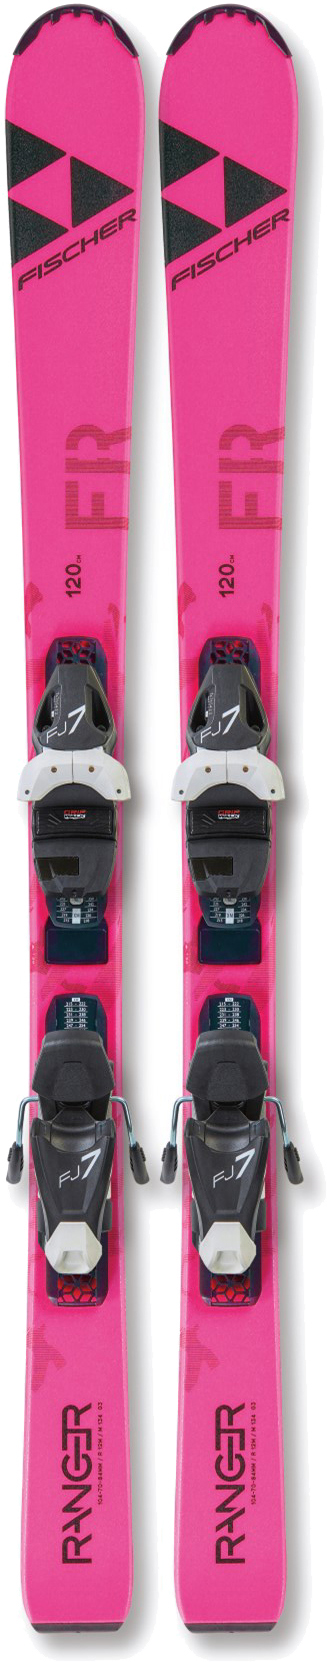 Лыжи для новичков Fischer Ranger Fr Jr Slr Pro 110 см